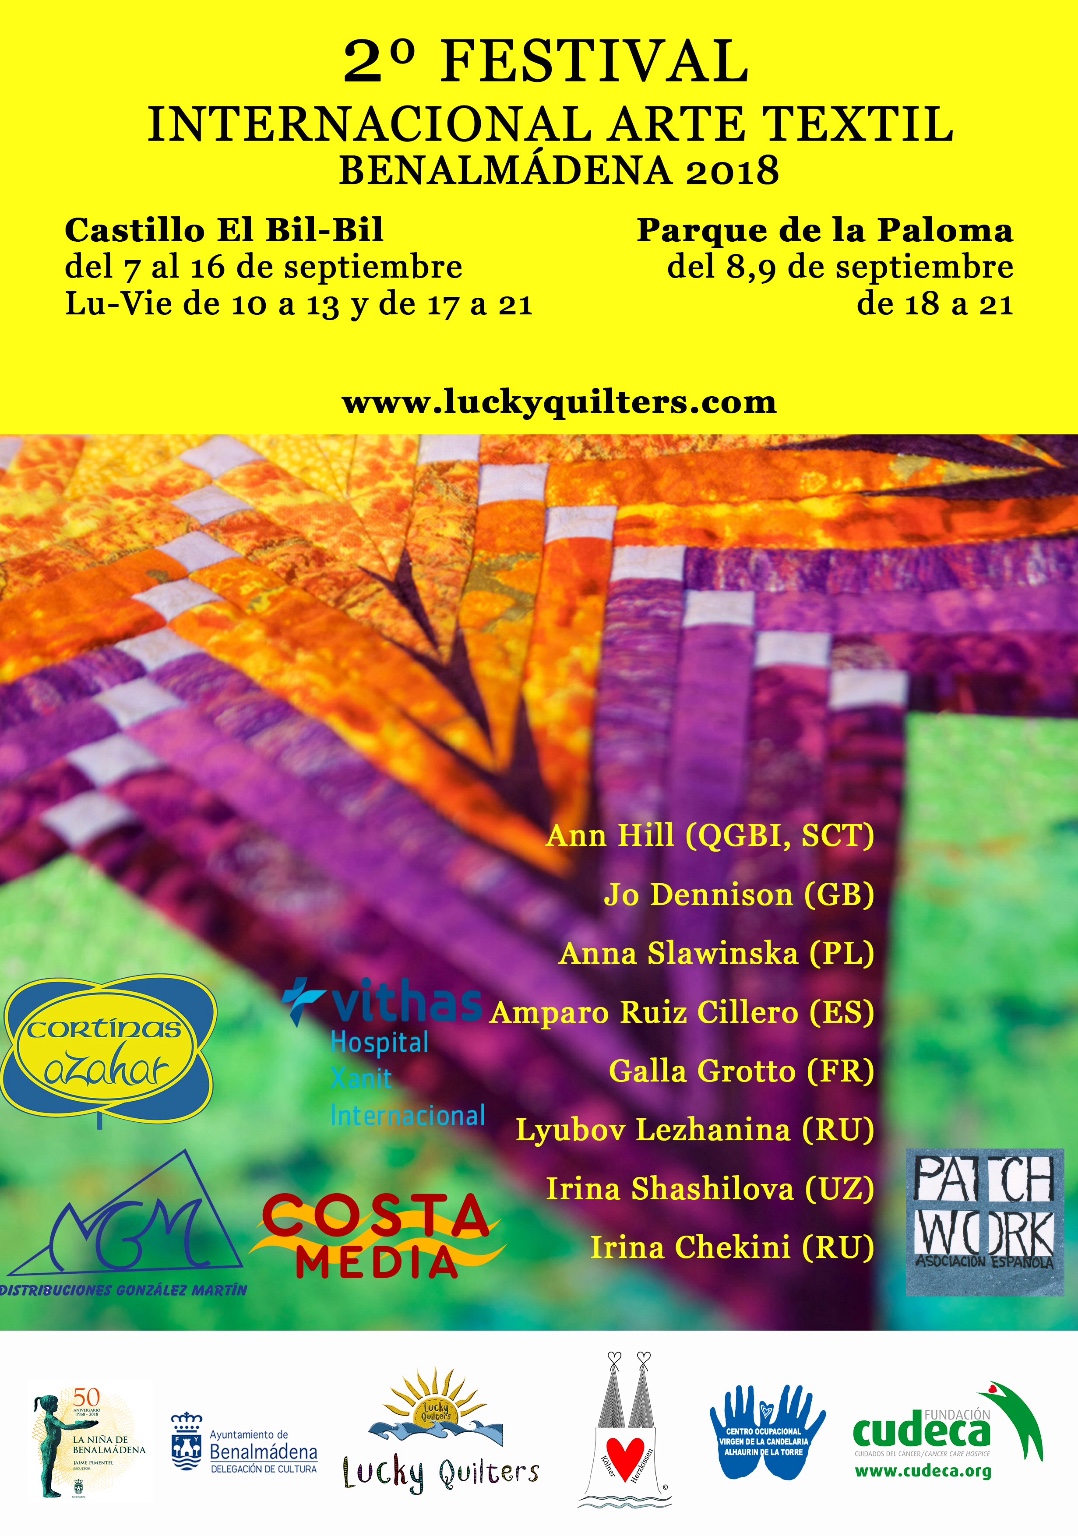 II Festival Internacional de Arte Textil en Benalmádena, a beneficio de CUDECA.